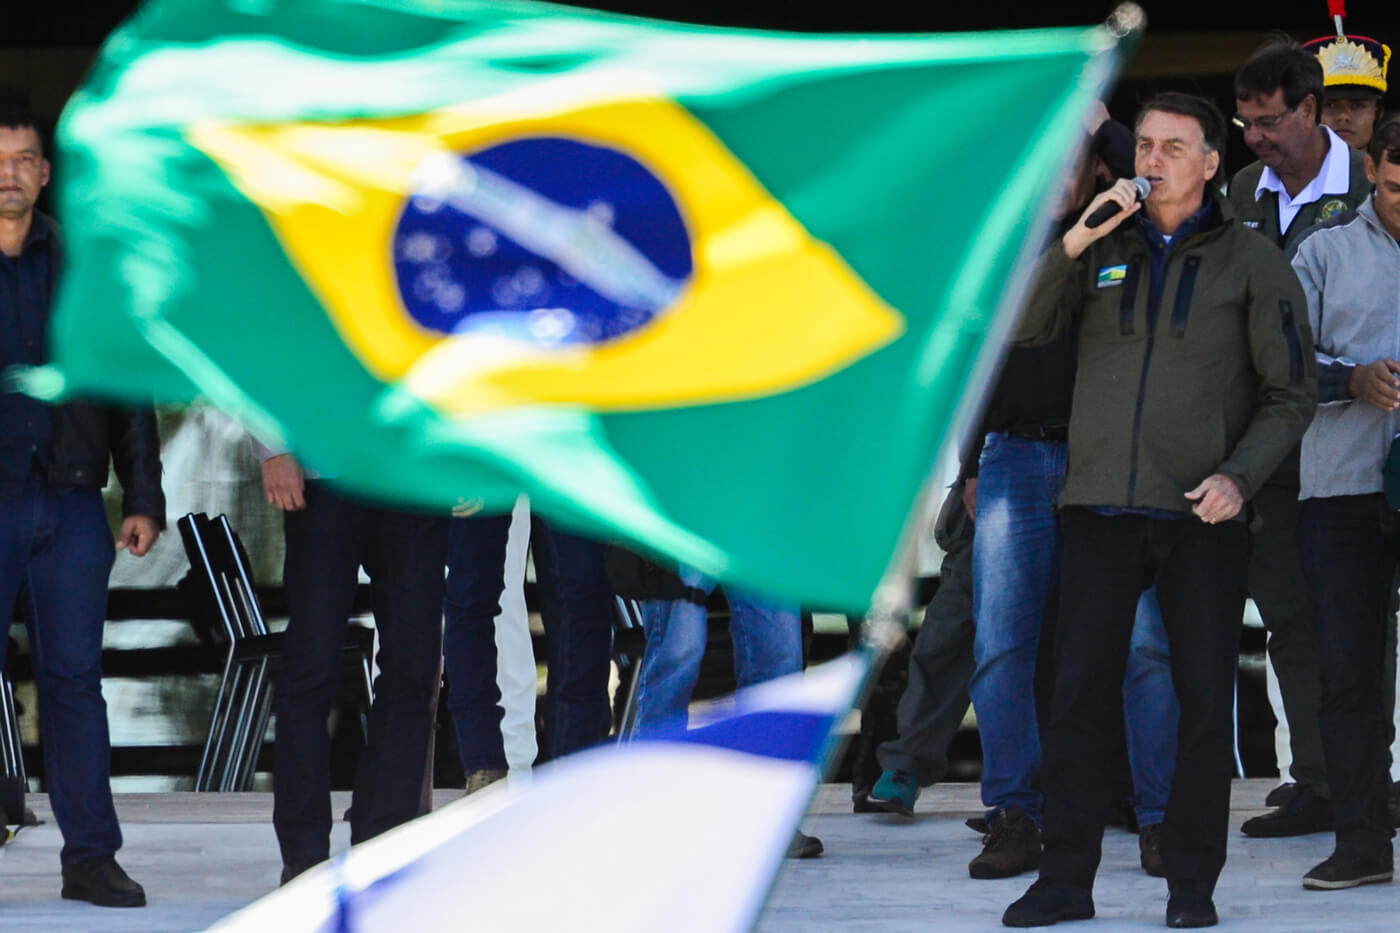 O presidente Jair Bolsonaro participou no domingo 8/8/2021 de um passeio de moto em Brasília em homenagem ao Dia dos Pais. A manifestação reuniu apoiadores do presidente, que se concentraram em frente ao Palácio do Planalto, na Praça dos Três Poderes.